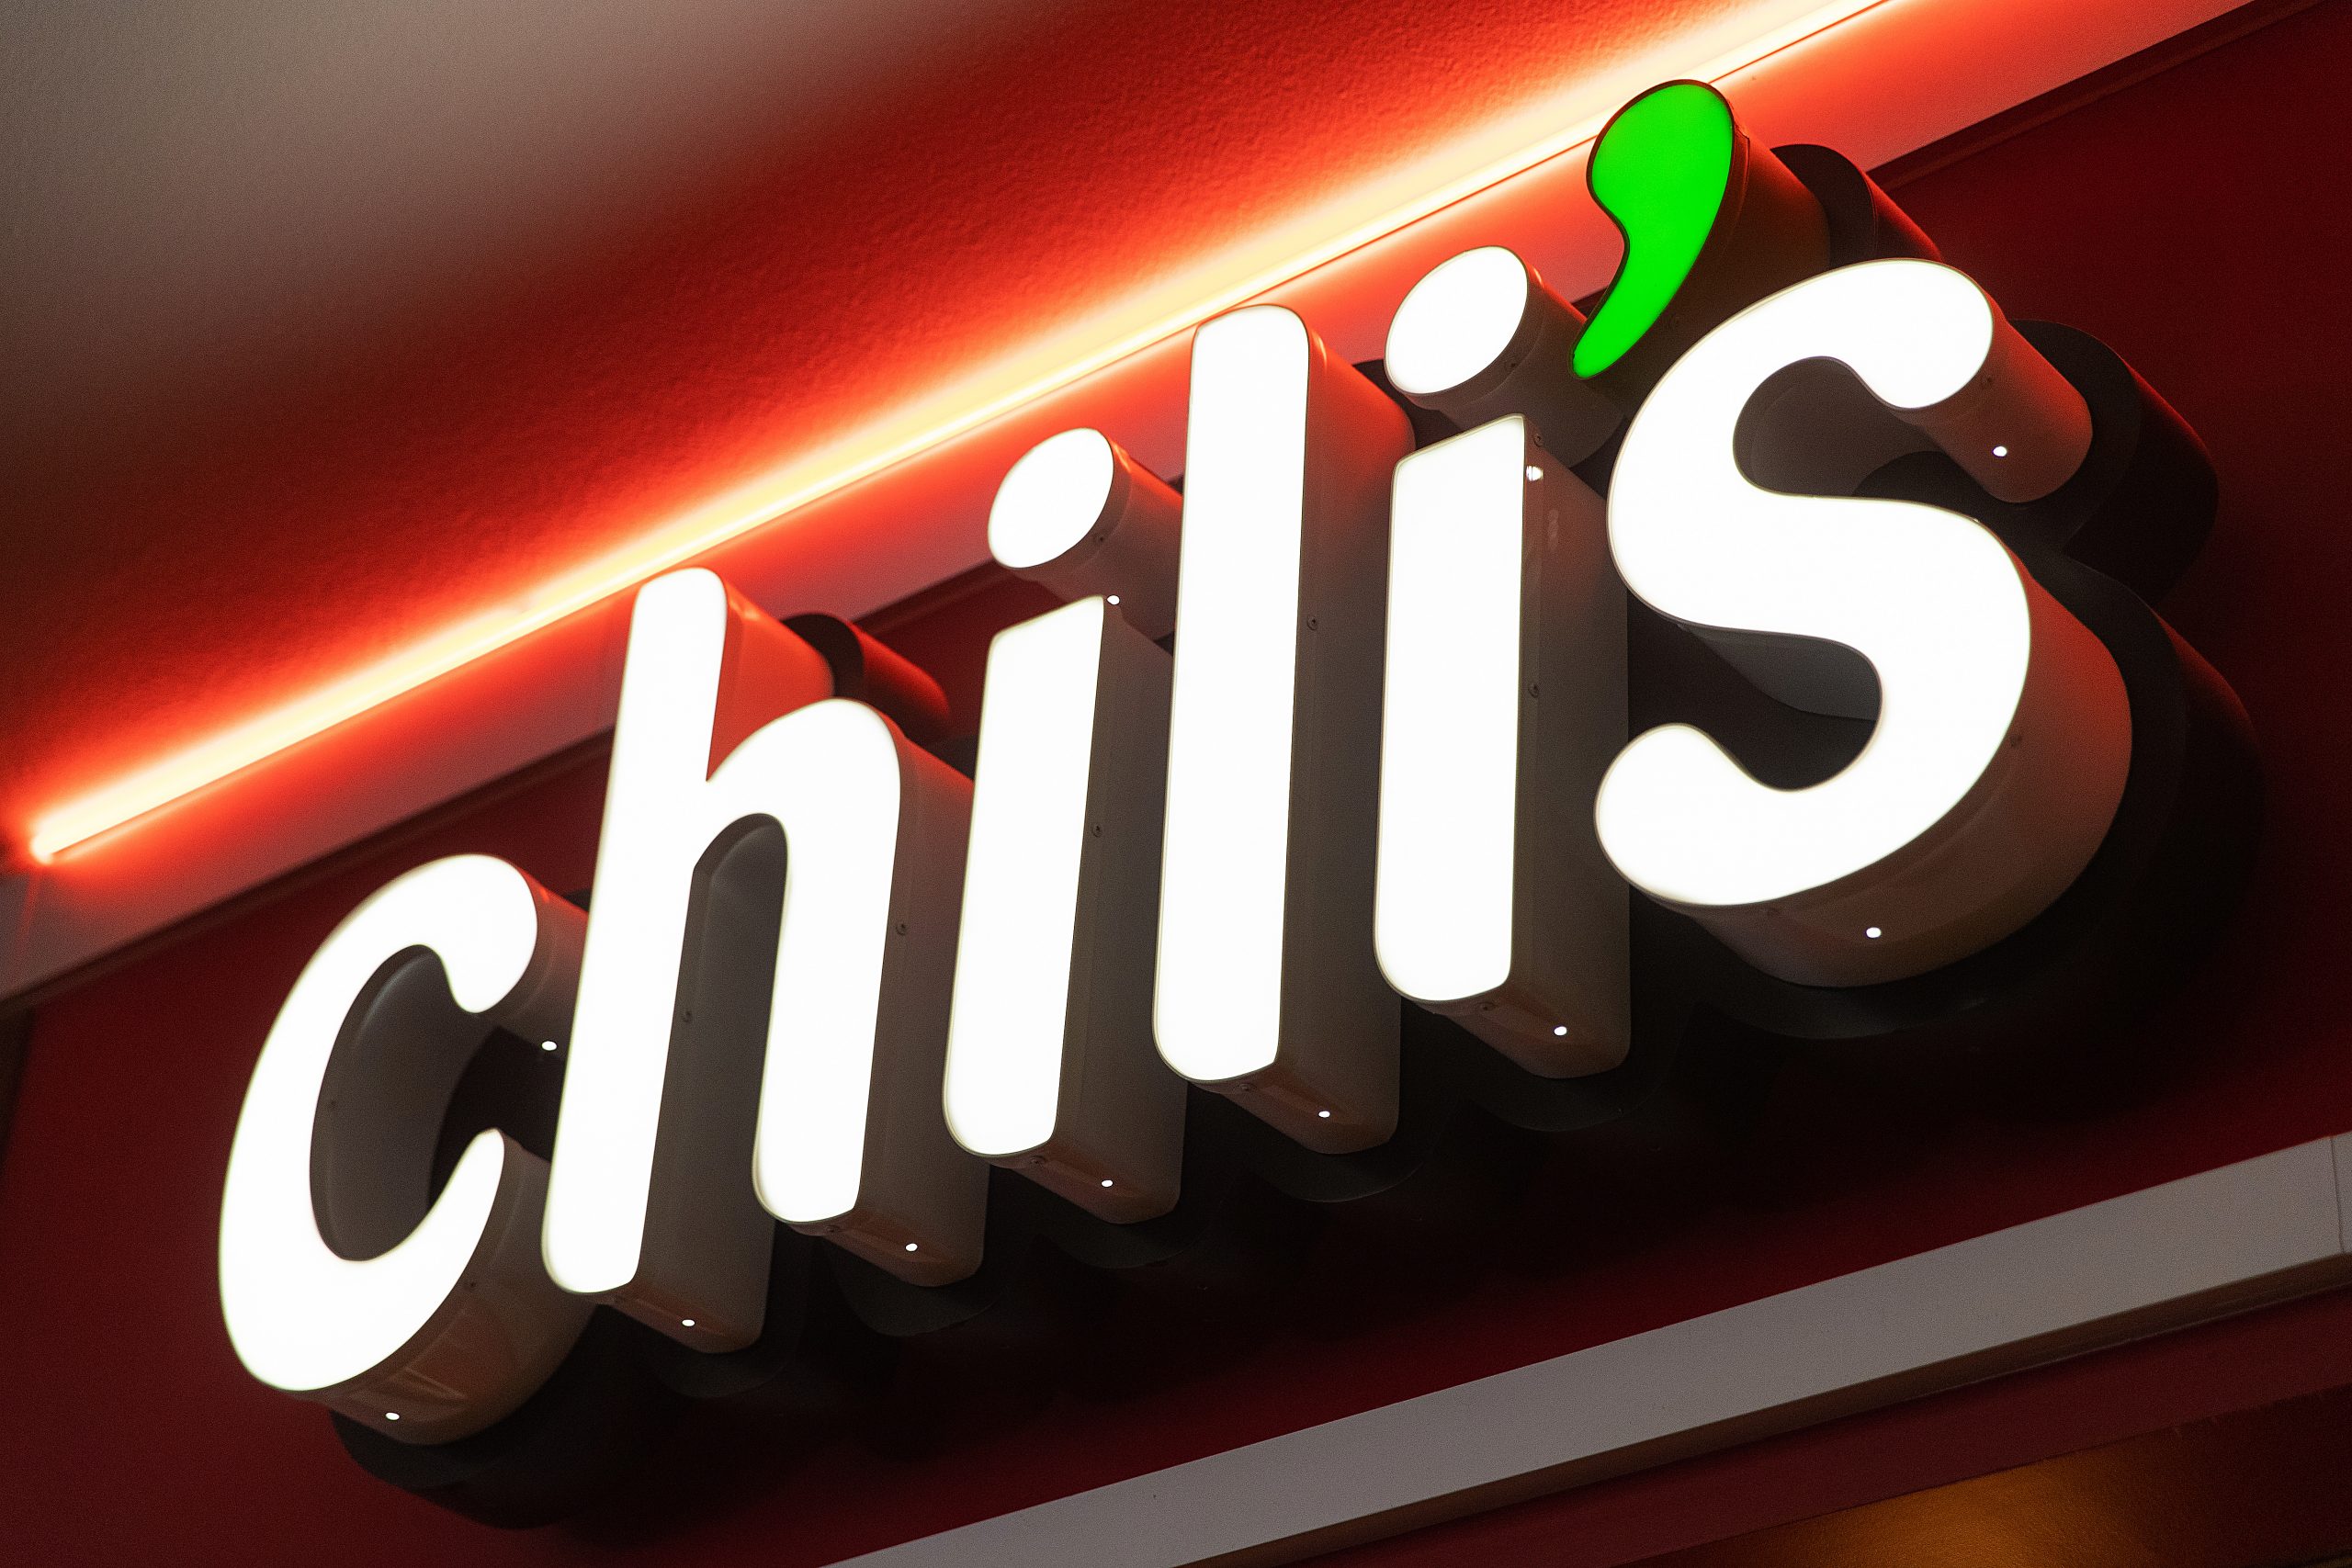 Chili's sign